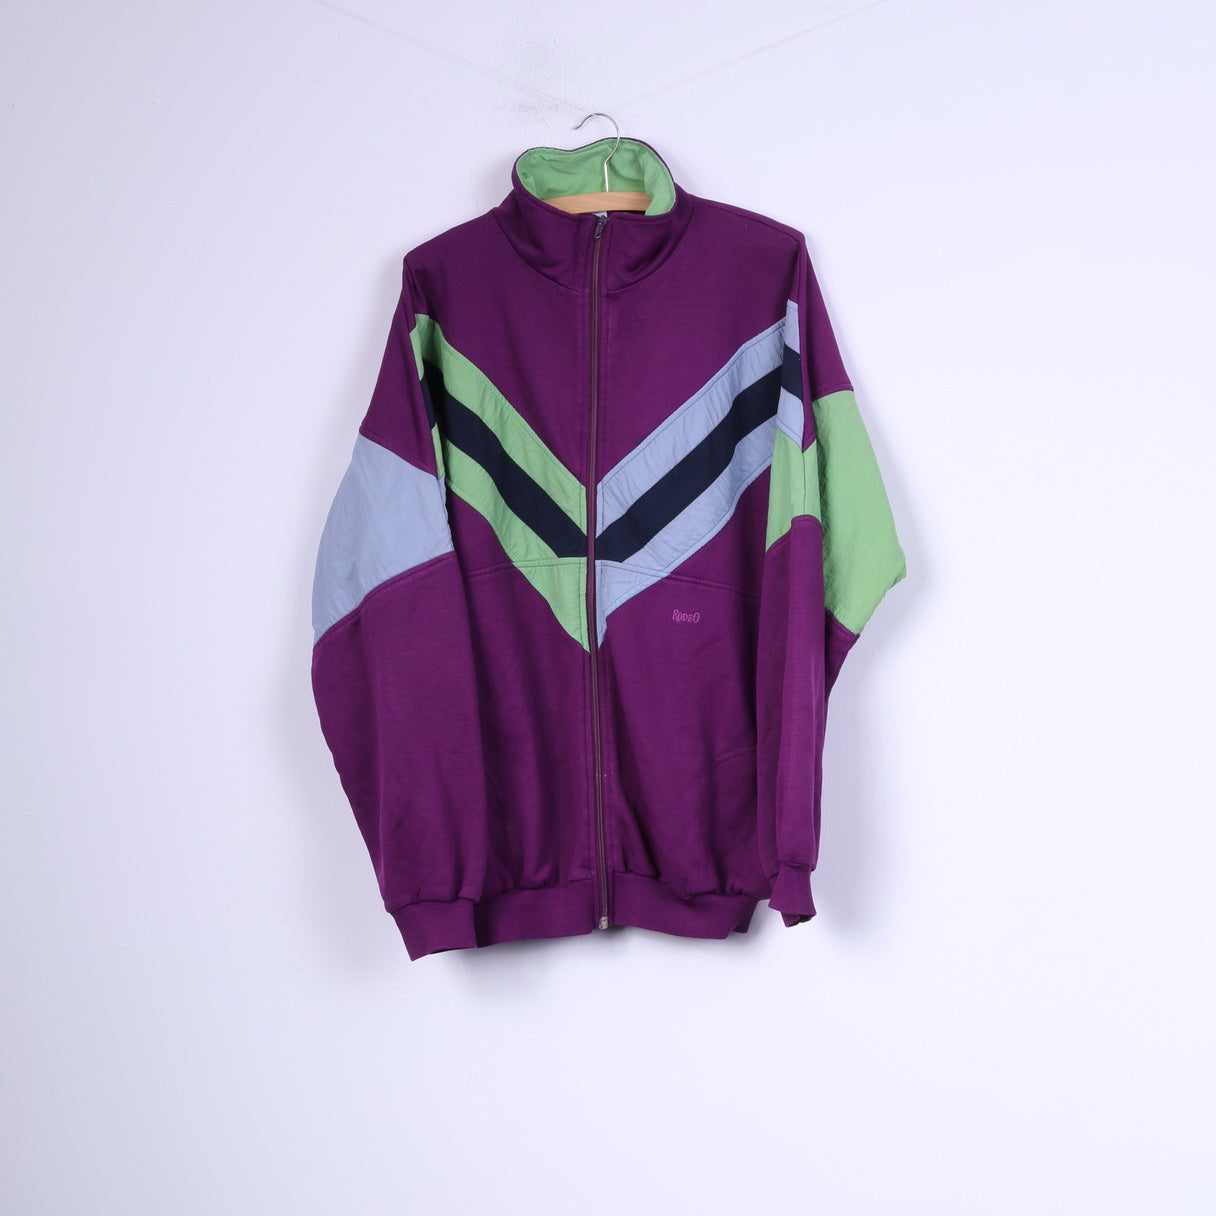 C&amp;A Rodeo Hommes XL 56-58 Sweat Violet Sportswear Top Coton Fermeture Éclair Complète